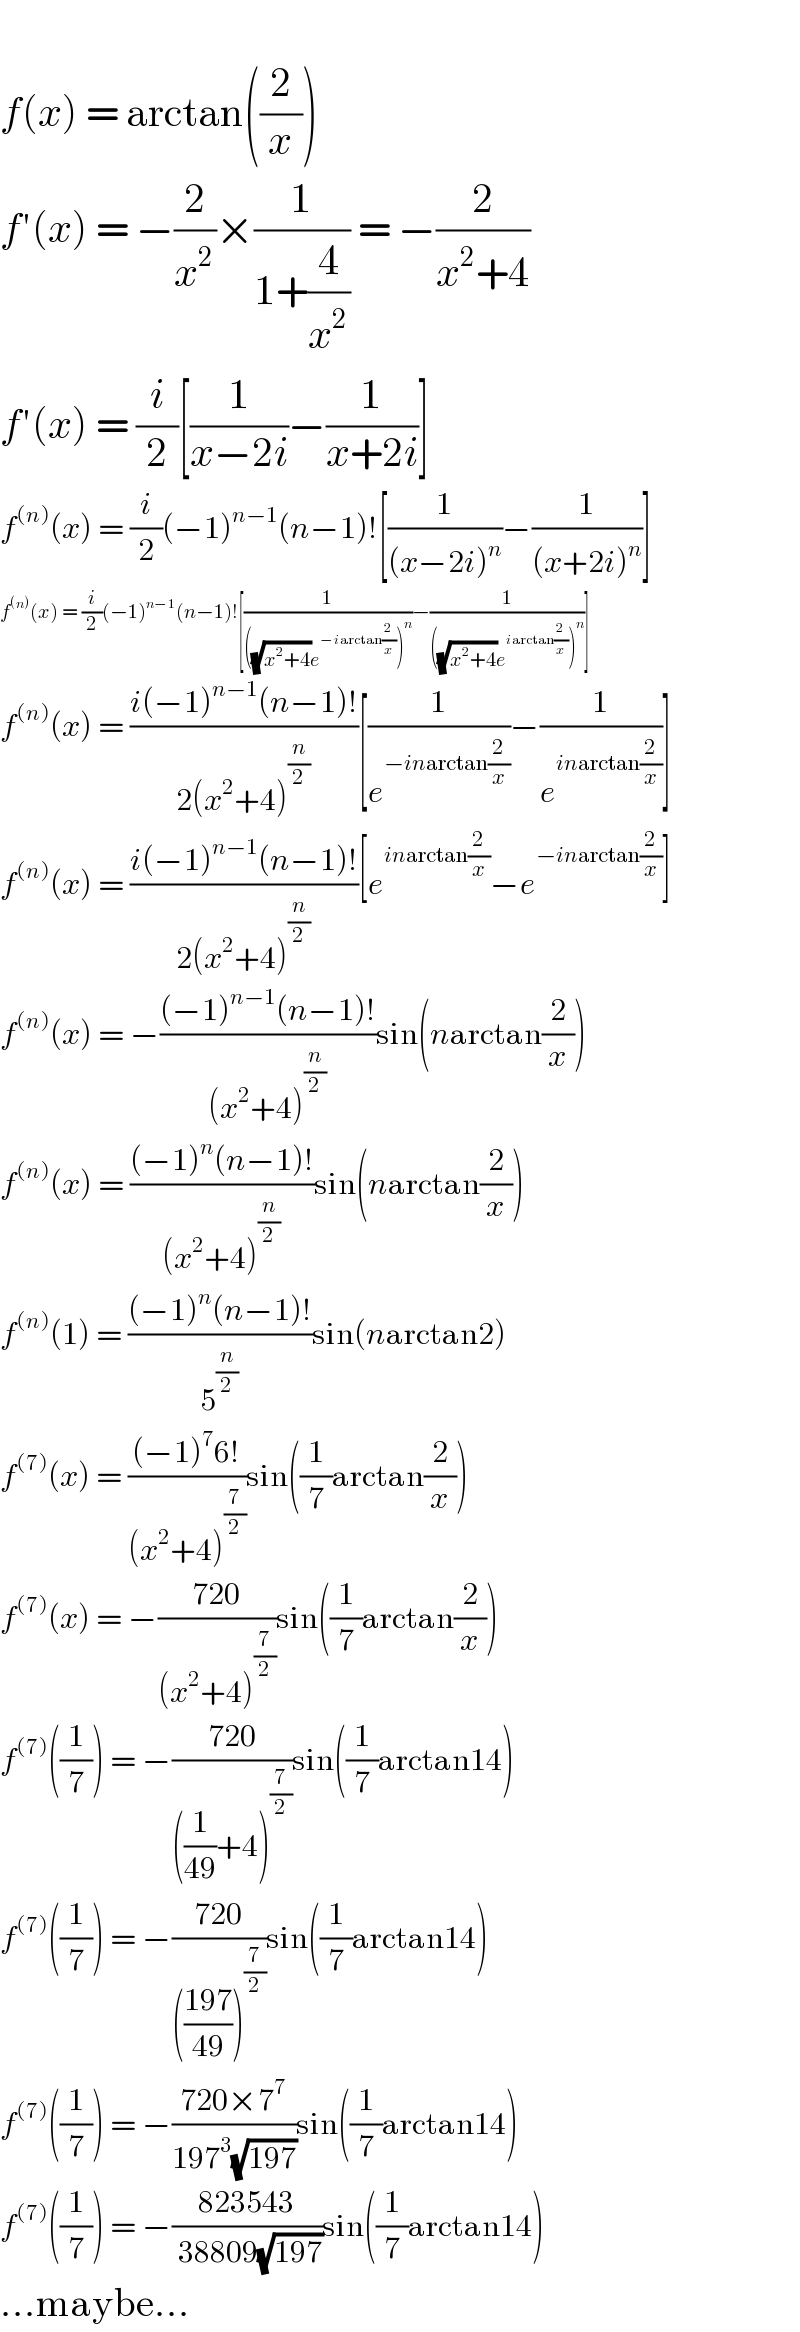   f(x) = arctan((2/x))  f′(x) = −(2/x^2 )×(1/(1+(4/x^2 ))) = −(2/(x^2 +4))  f′(x) = (i/2)[(1/(x−2i))−(1/(x+2i))]  f^((n)) (x) = (i/2)(−1)^(n−1) (n−1)![(1/((x−2i)^n ))−(1/((x+2i)^n ))]  f^((n)) (x) = (i/2)(−1)^(n−1) (n−1)![(1/(((√(x^2 +4))e^(−iarctan(2/x)) )^n ))−(1/(((√(x^2 +4))e^(iarctan(2/x)) )^n ))]  f^((n)) (x) = ((i(−1)^(n−1) (n−1)!)/(2(x^2 +4)^(n/2) ))[(1/e^(−inarctan(2/x)) )−(1/e^(inarctan(2/x)) )]  f^((n)) (x) = ((i(−1)^(n−1) (n−1)!)/(2(x^2 +4)^(n/2) ))[e^(inarctan(2/x)) −e^(−inarctan(2/x)) ]  f^((n)) (x) = −(((−1)^(n−1) (n−1)!)/((x^2 +4)^(n/2) ))sin(narctan(2/x))  f^((n)) (x) = (((−1)^n (n−1)!)/((x^2 +4)^(n/2) ))sin(narctan(2/x))  f^((n)) (1) = (((−1)^n (n−1)!)/5^(n/2) )sin(narctan2)  f^((7)) (x) = (((−1)^7 6!)/((x^2 +4)^(7/2) ))sin((1/7)arctan(2/x))  f^((7)) (x) = −((720)/((x^2 +4)^(7/2) ))sin((1/7)arctan(2/x))  f^((7)) ((1/7)) = −((720)/(((1/(49))+4)^(7/2) ))sin((1/7)arctan14)  f^((7)) ((1/7)) = −((720)/((((197)/(49)))^(7/2) ))sin((1/7)arctan14)  f^((7)) ((1/7)) = −((720×7^7 )/(197^3 (√(197))))sin((1/7)arctan14)  f^((7)) ((1/7)) = −((823543)/( 38809(√(197))))sin((1/7)arctan14)  ...maybe...  